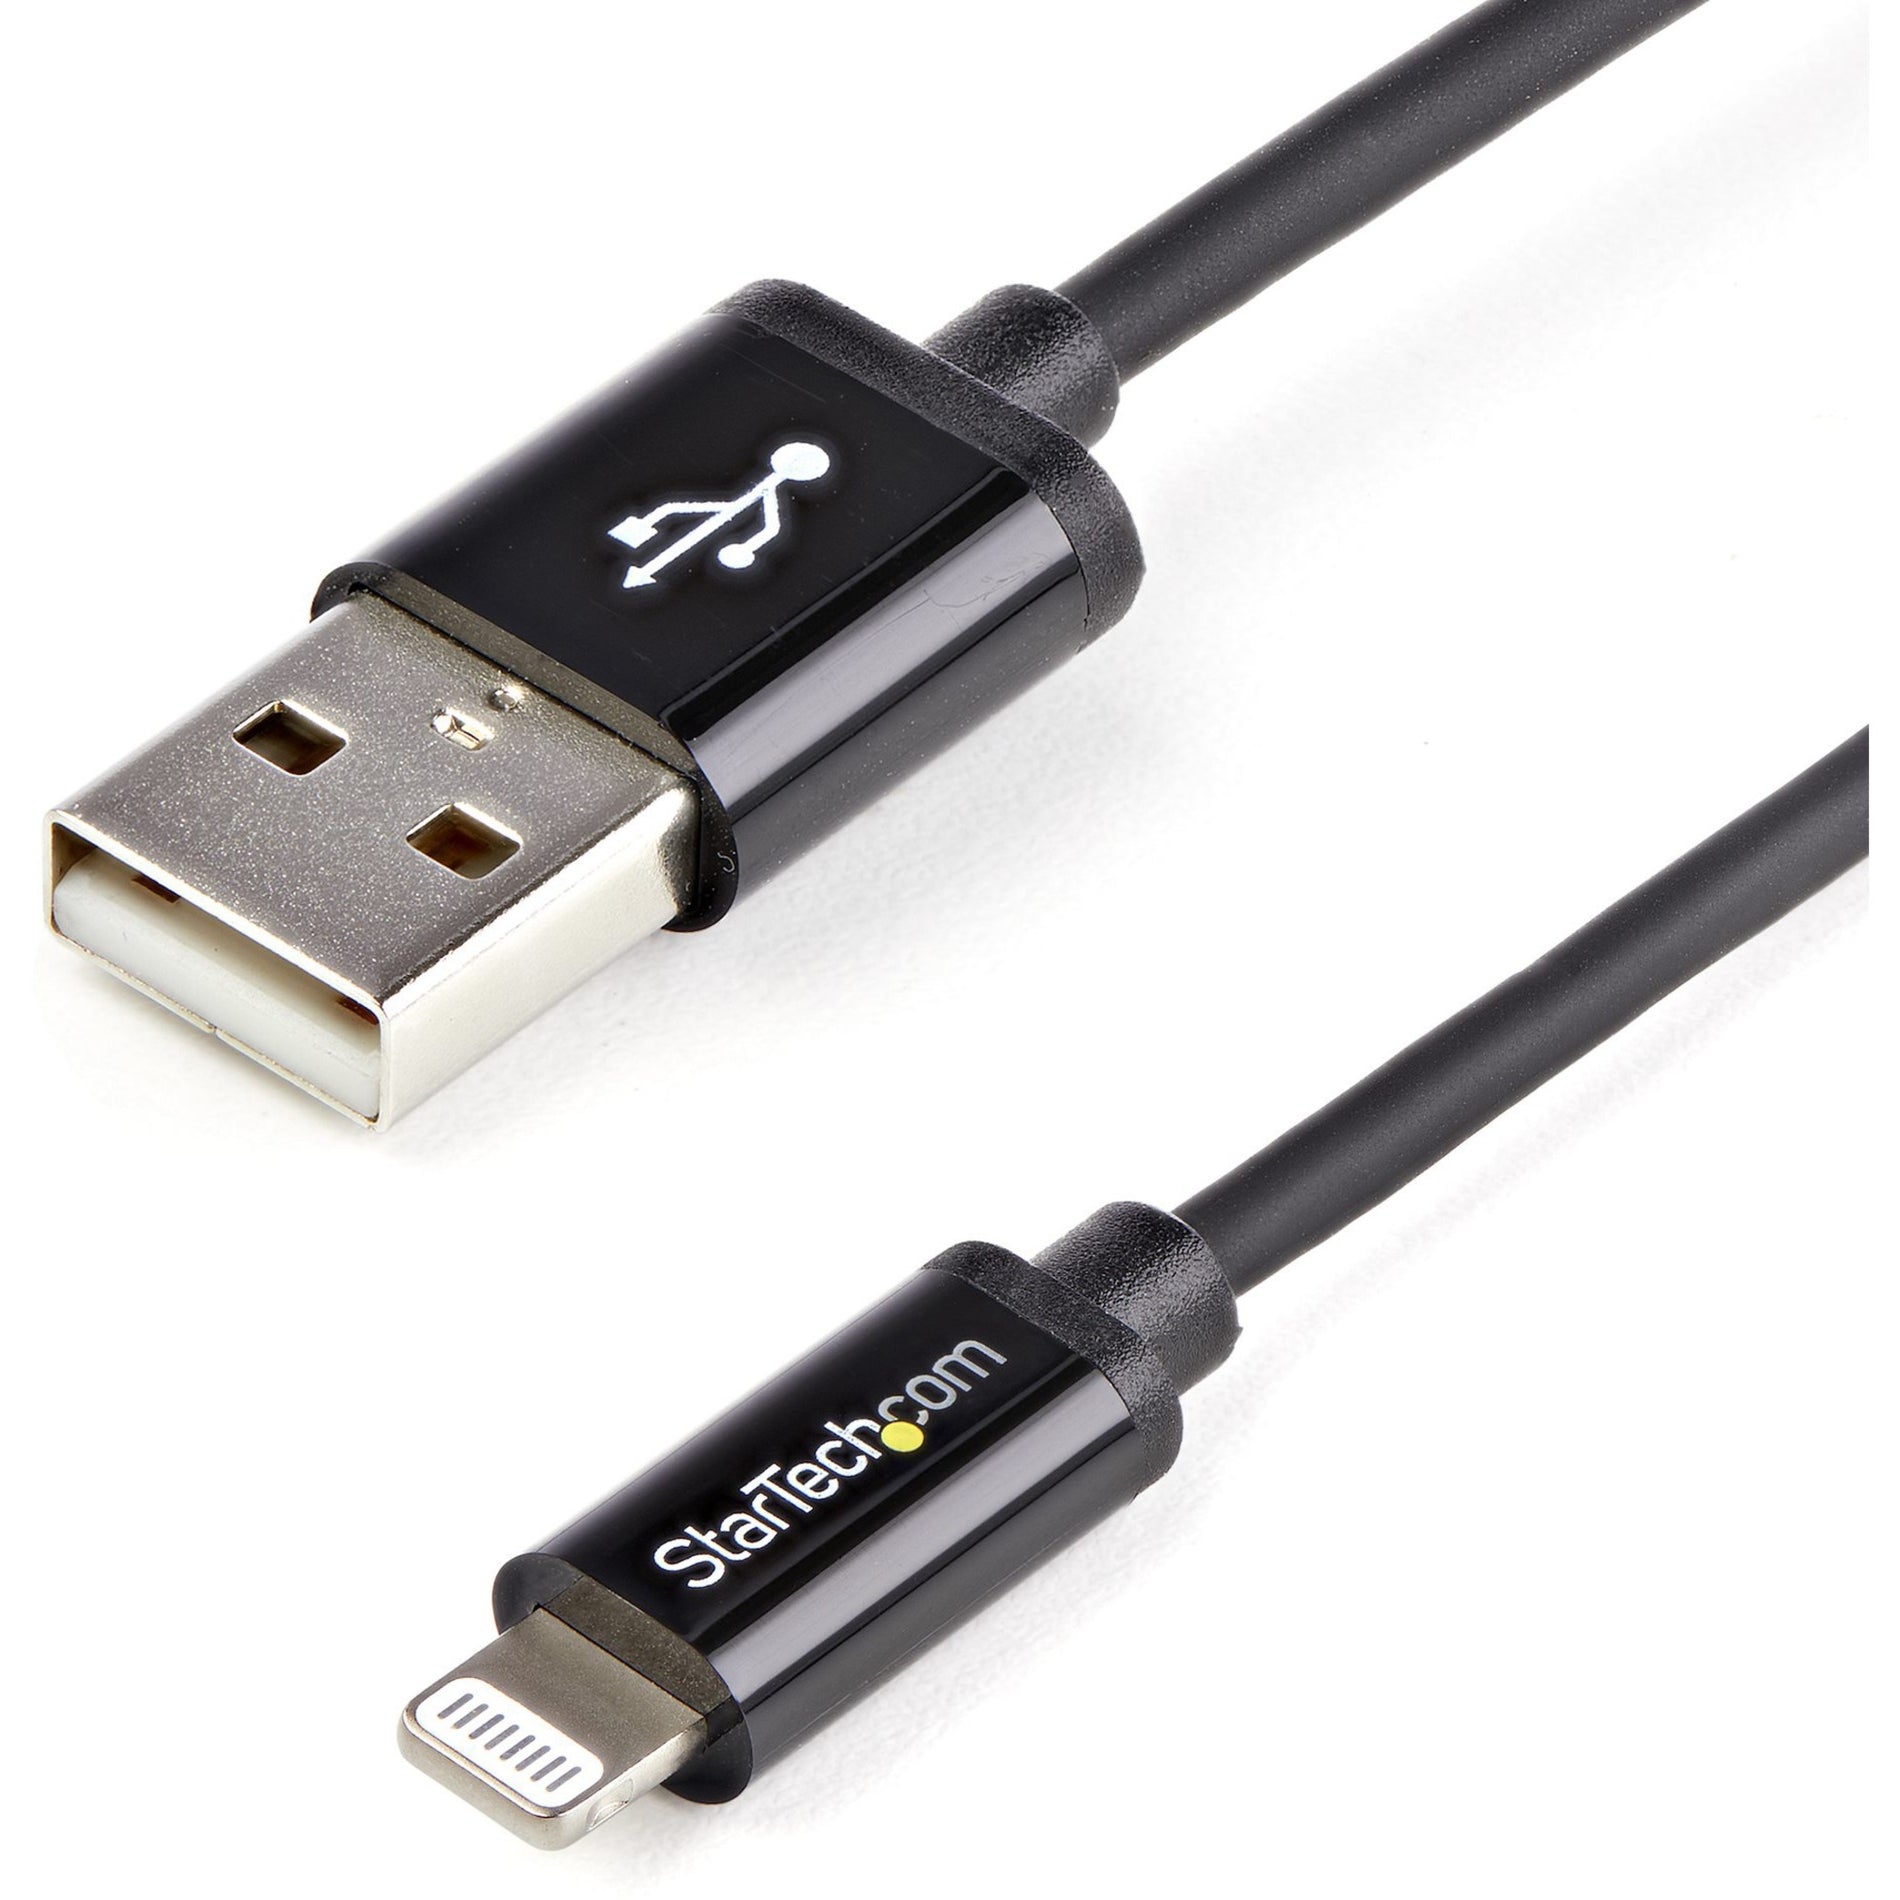 StarTech.com Cable de transferencia de datos Lightning/USB Sync/Charge USBLT2MB de 6 pies de largo negro